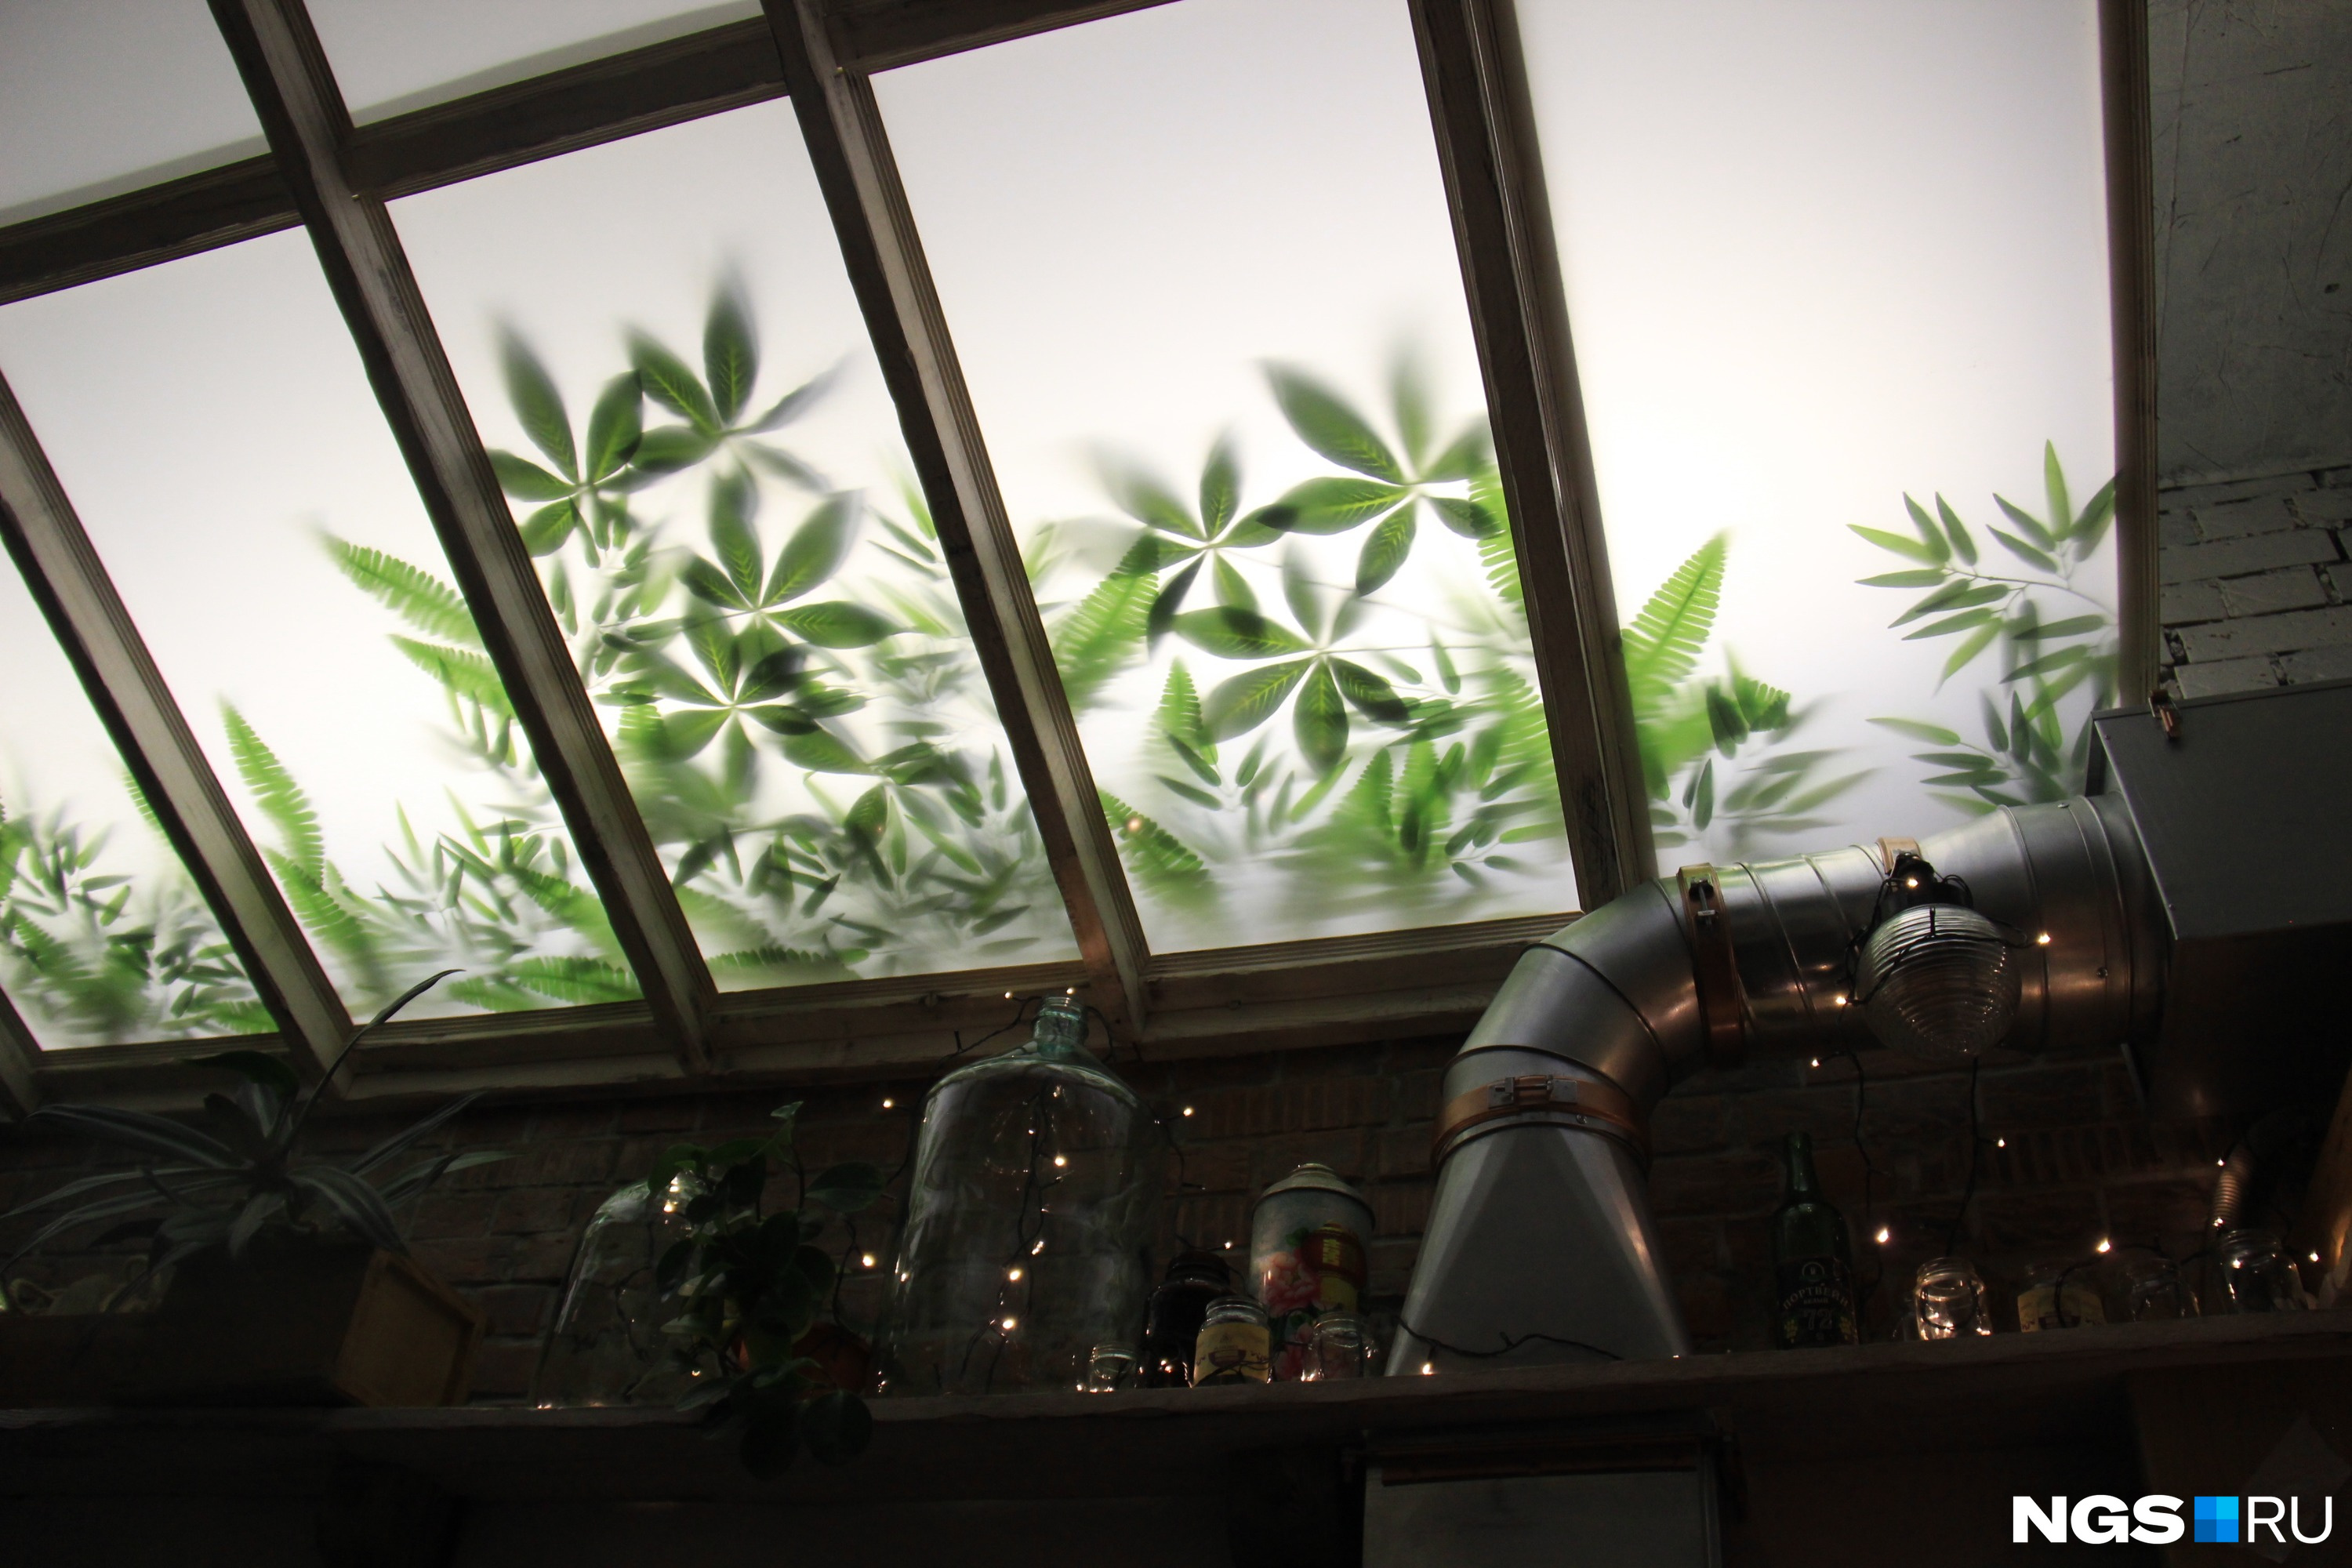 Стеклянный фальшпотолок с подсветкой позволяет создать в «Доме культуры» атмосферу вечного лета